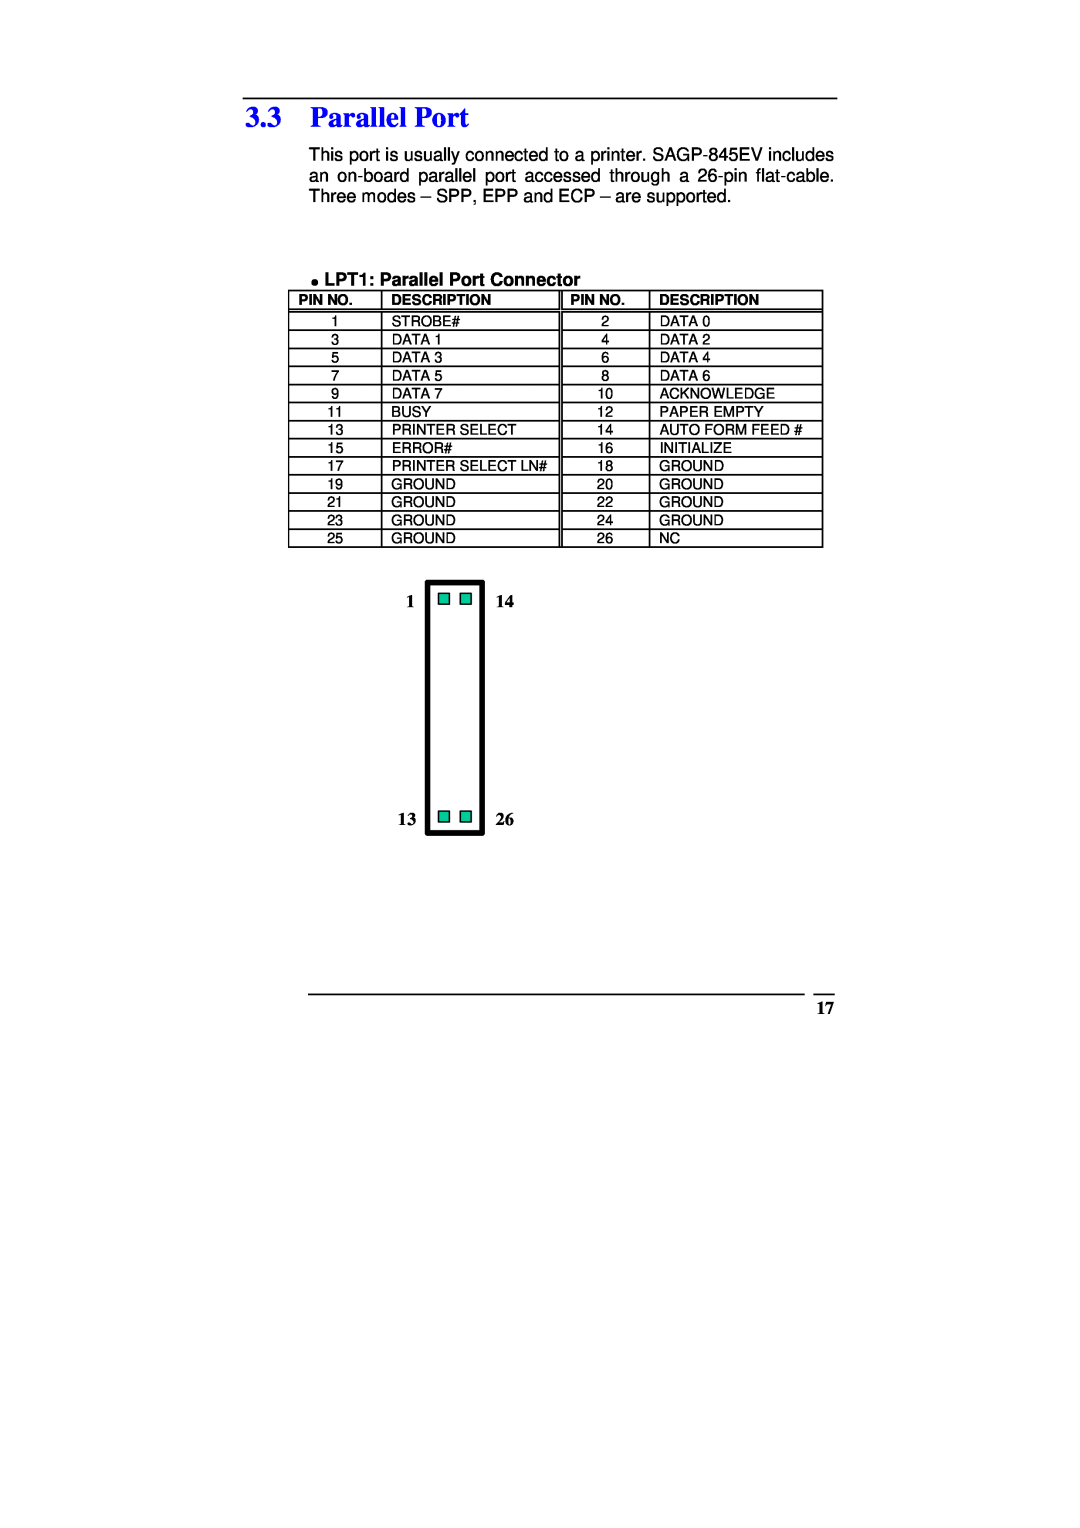 ICP DAS USA SAGP-845EV manual LPT1 Parallel Port Connector, Pin No, Description 